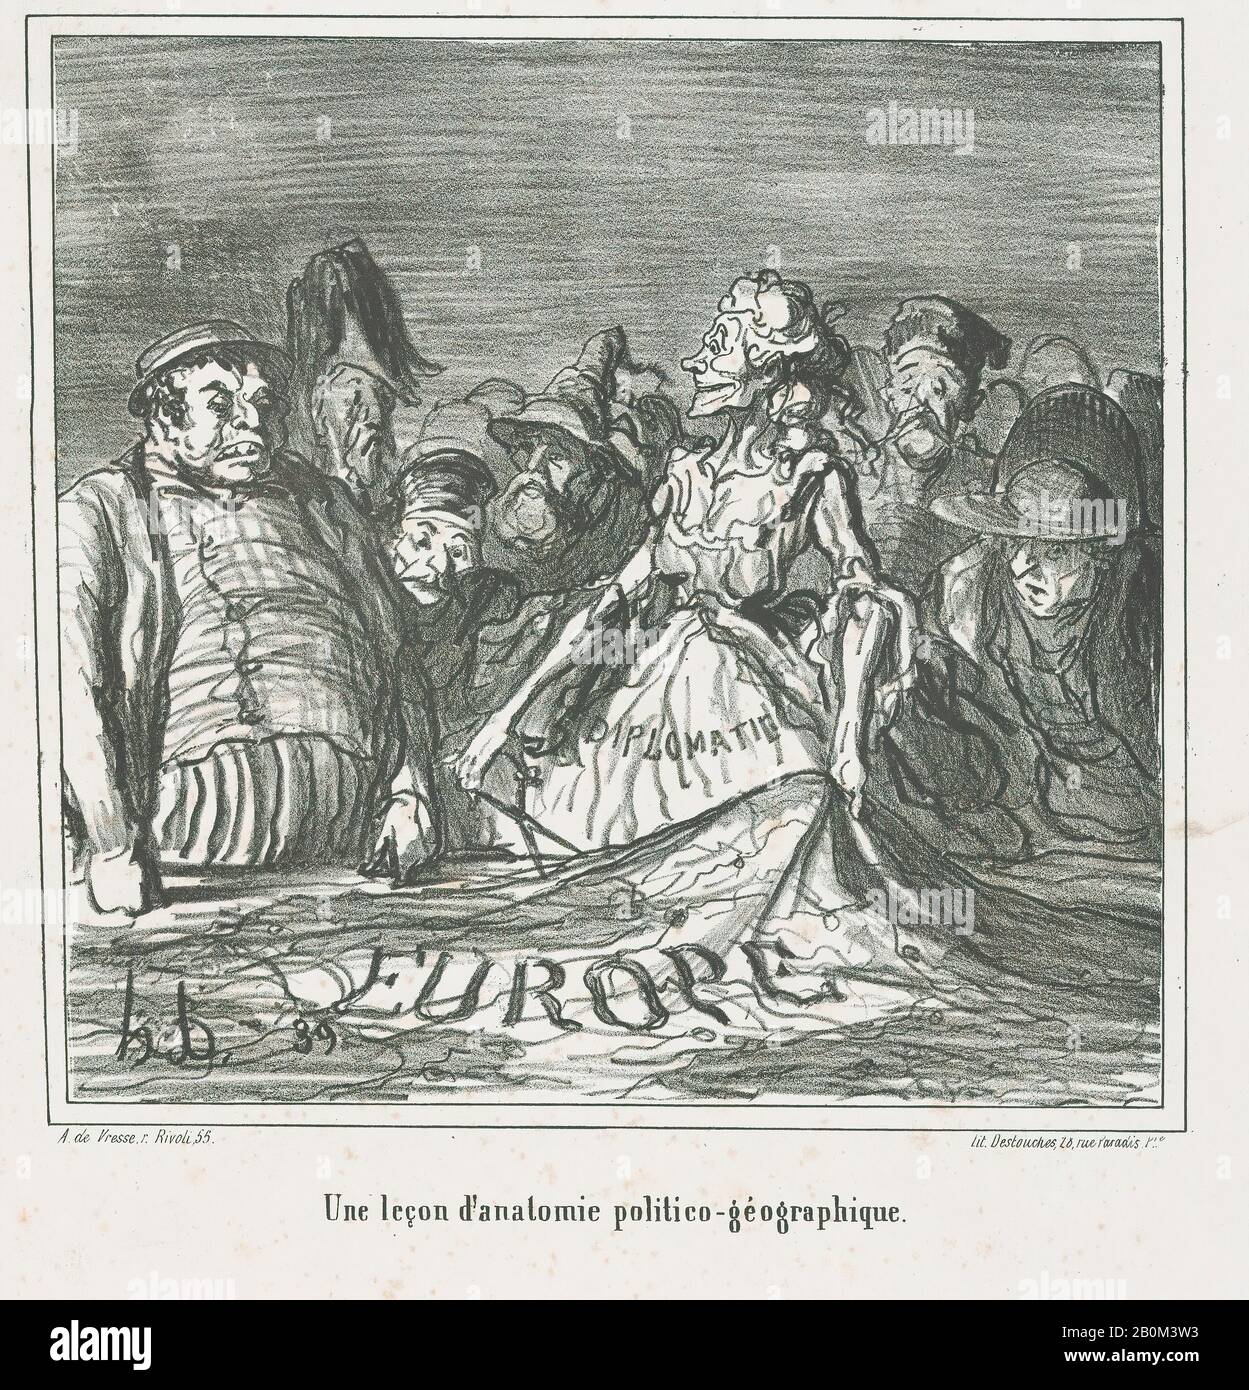 Honoré Daumier, una lezione di anatomia politico-geografica, tratta da 'Notizie del giorno', pubblicata in le Charivari, 16-17 agosto 1866, 'Notizie del giorno' (Actualités), Honoré Daumier (francese, Marsiglia 1808–1879 Valmondois), 16-17 agosto 1866, Litograph su carta wove; terza immagine di Delteil × 16/8 (Delteil 16/8). (21,4 × 22,1 cm), foglio: 14 1/8 × 10 1/2 in. (35,8 × 26,7 cm), stampe Foto Stock